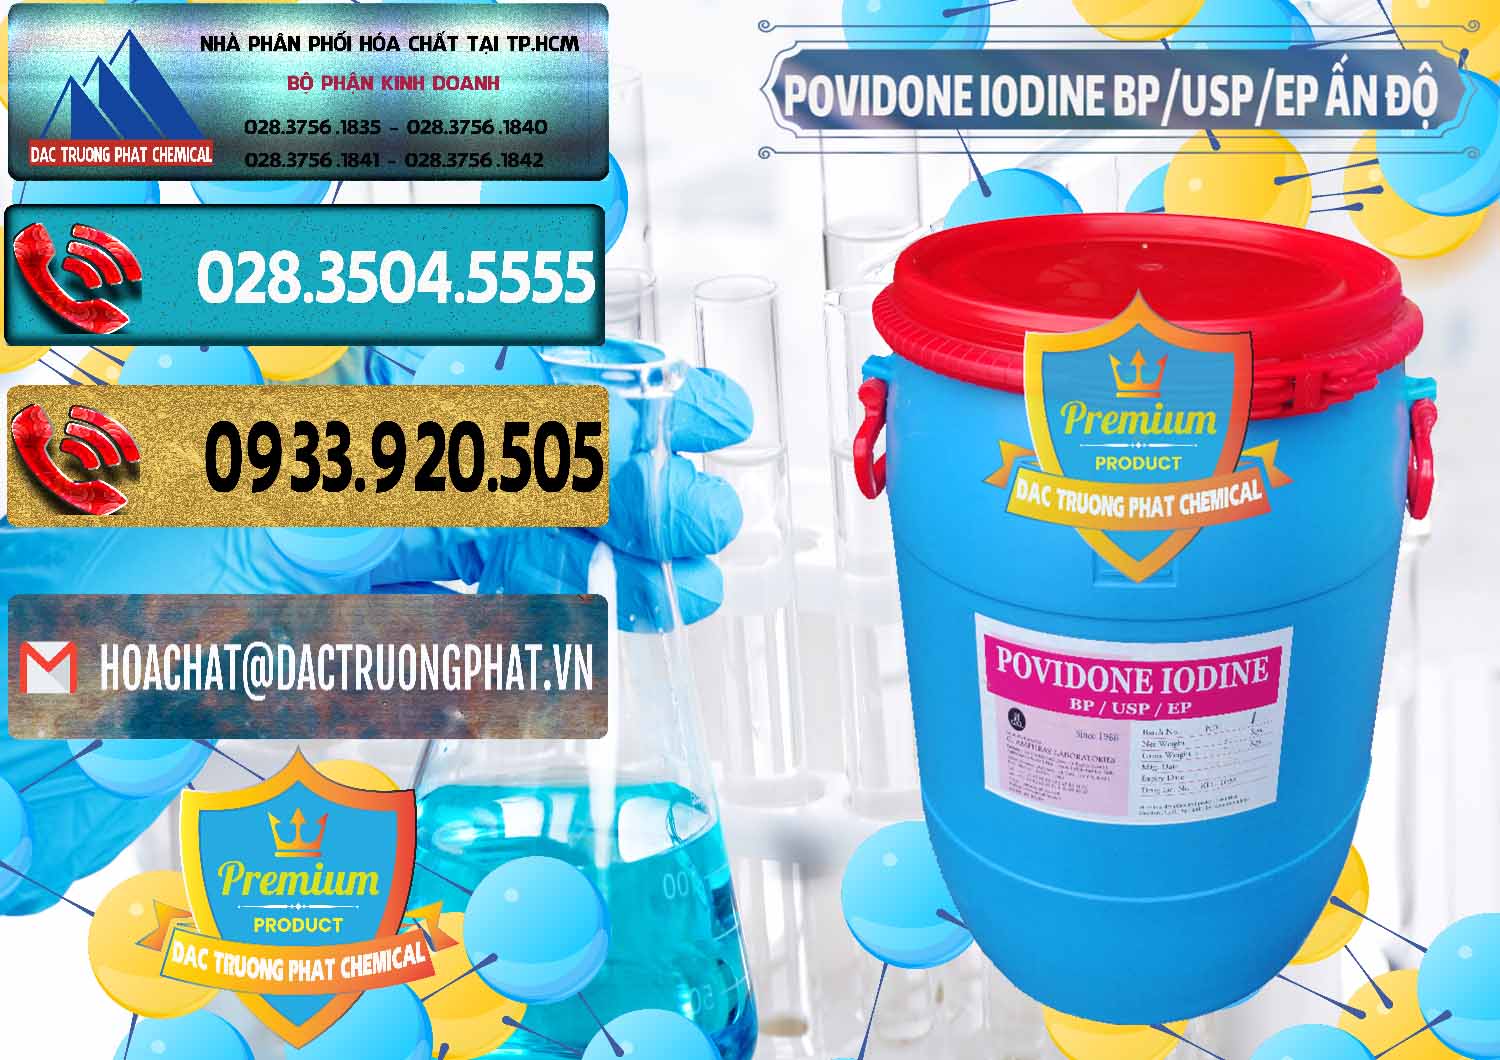 Cty chuyên bán - phân phối Povidone Iodine BP USP EP Ấn Độ India - 0318 - Cty cung cấp ( phân phối ) hóa chất tại TP.HCM - hoachatdetnhuom.com